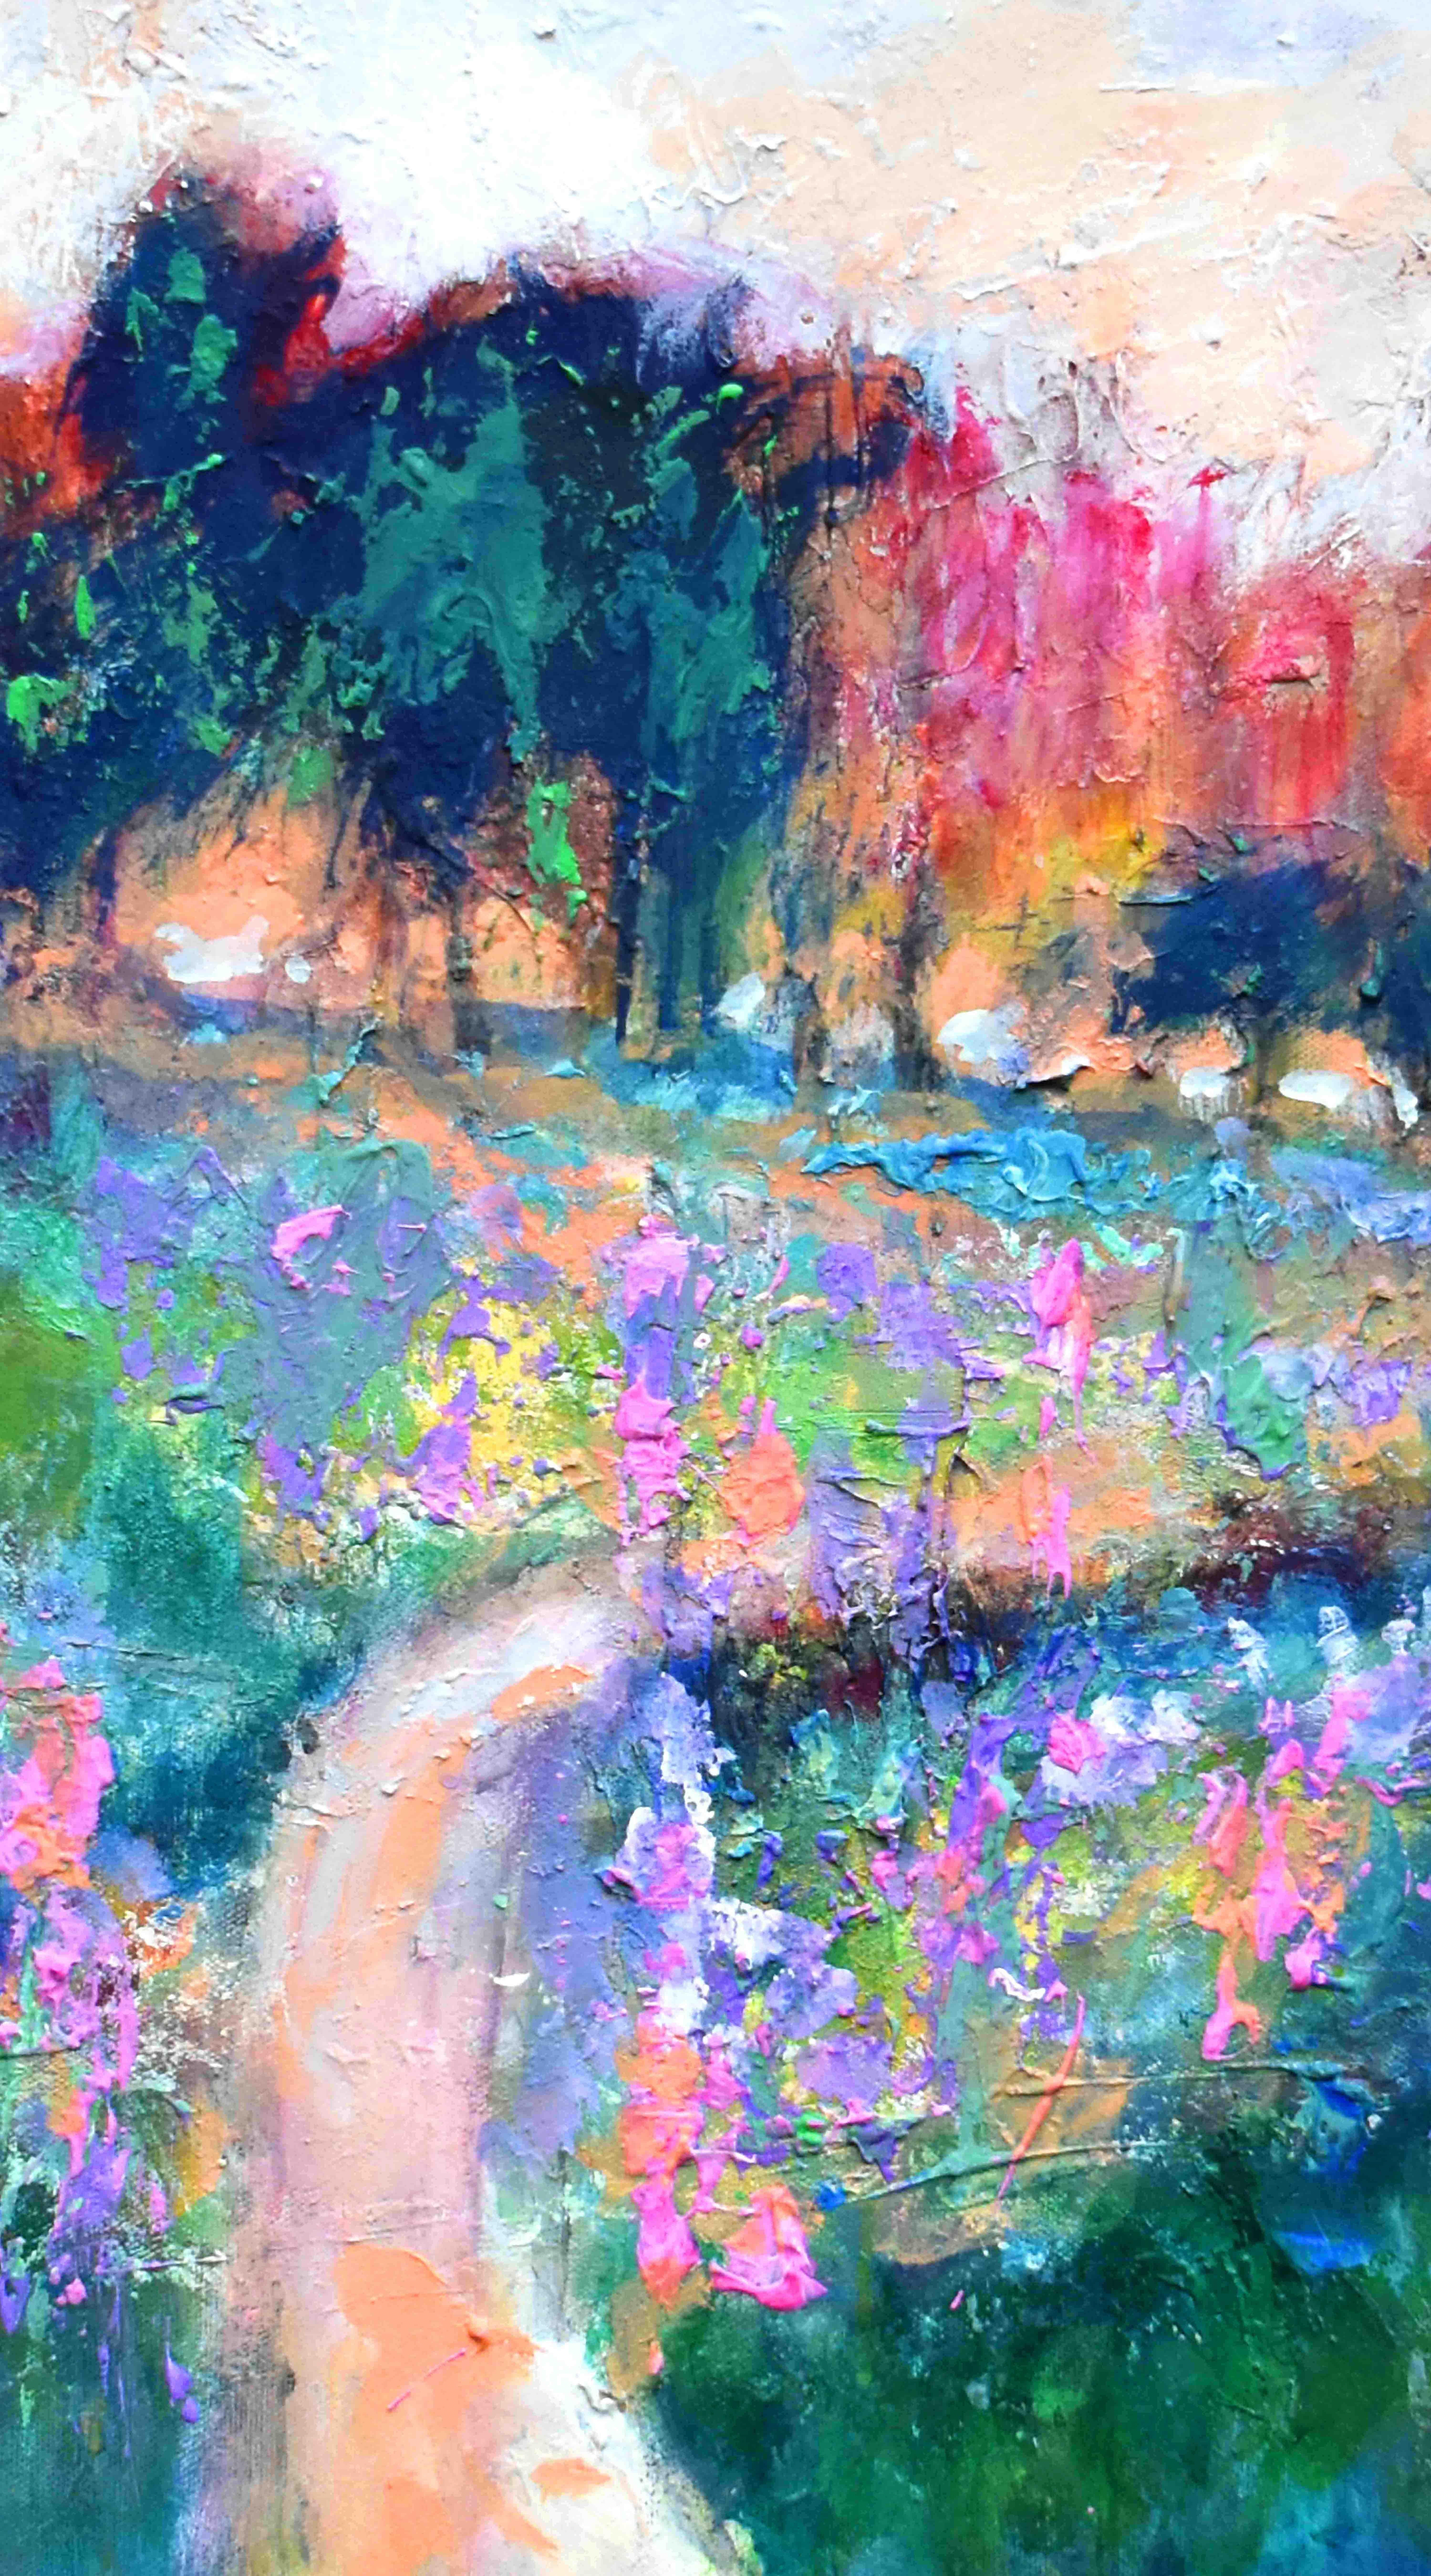 <p>Kommentare des Künstlers<br>Der Künstler Kip Decker schafft eine fesselnde expressionistische Landschaft. Eine kleine, gewundene Straße führt über ein Feld voller bunter Blumen hinauf zu einer Baumgruppe. Kräftige Lavendel- und Nelkentöne tauchen